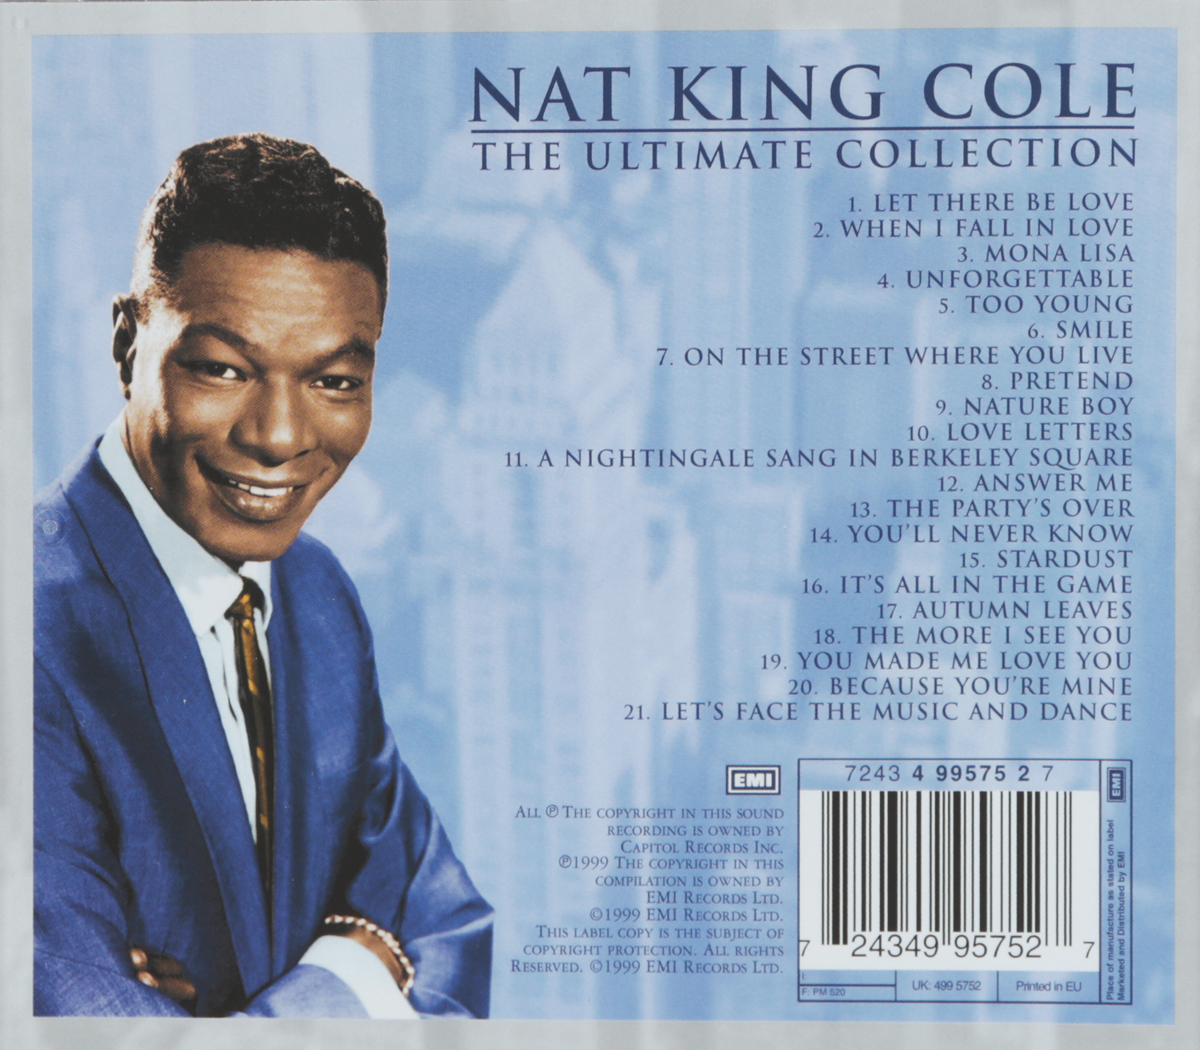 Нат лов. Nat King Cole винил. Пластинка Nat King Cole. L-O-V-E нэт Кинг Коул. Нэт Кинг Ко́ул.